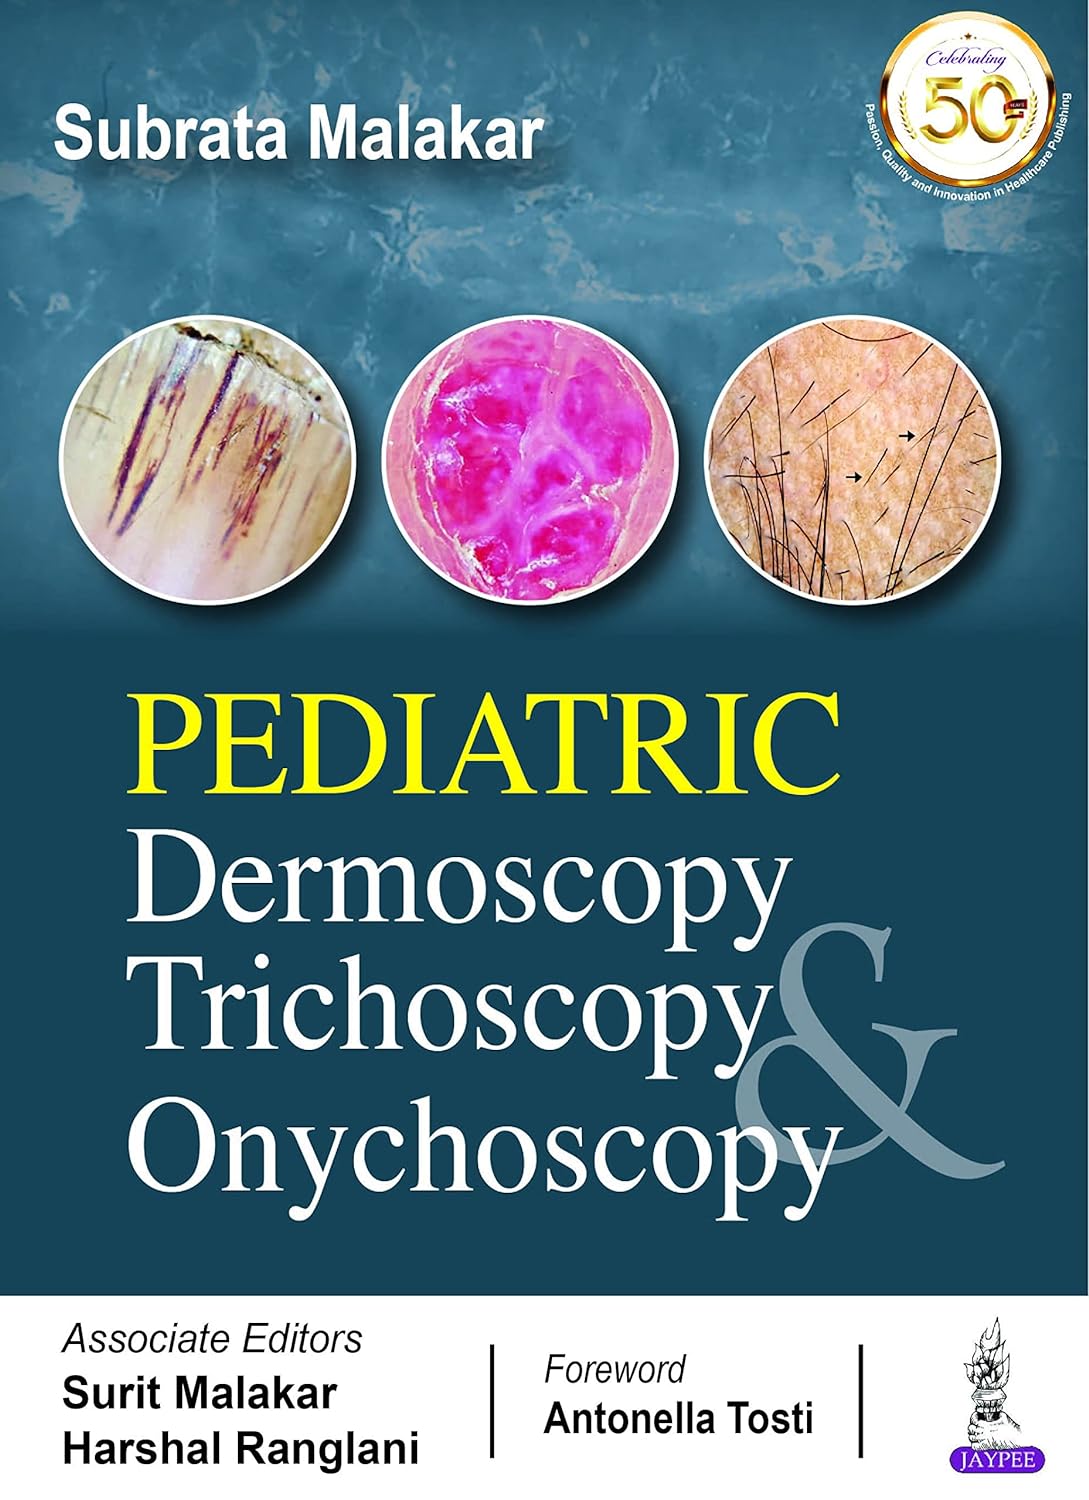 Pediatric Dermoscopy, Trichoscopy And Onychoscopy  by Subrata Malakar